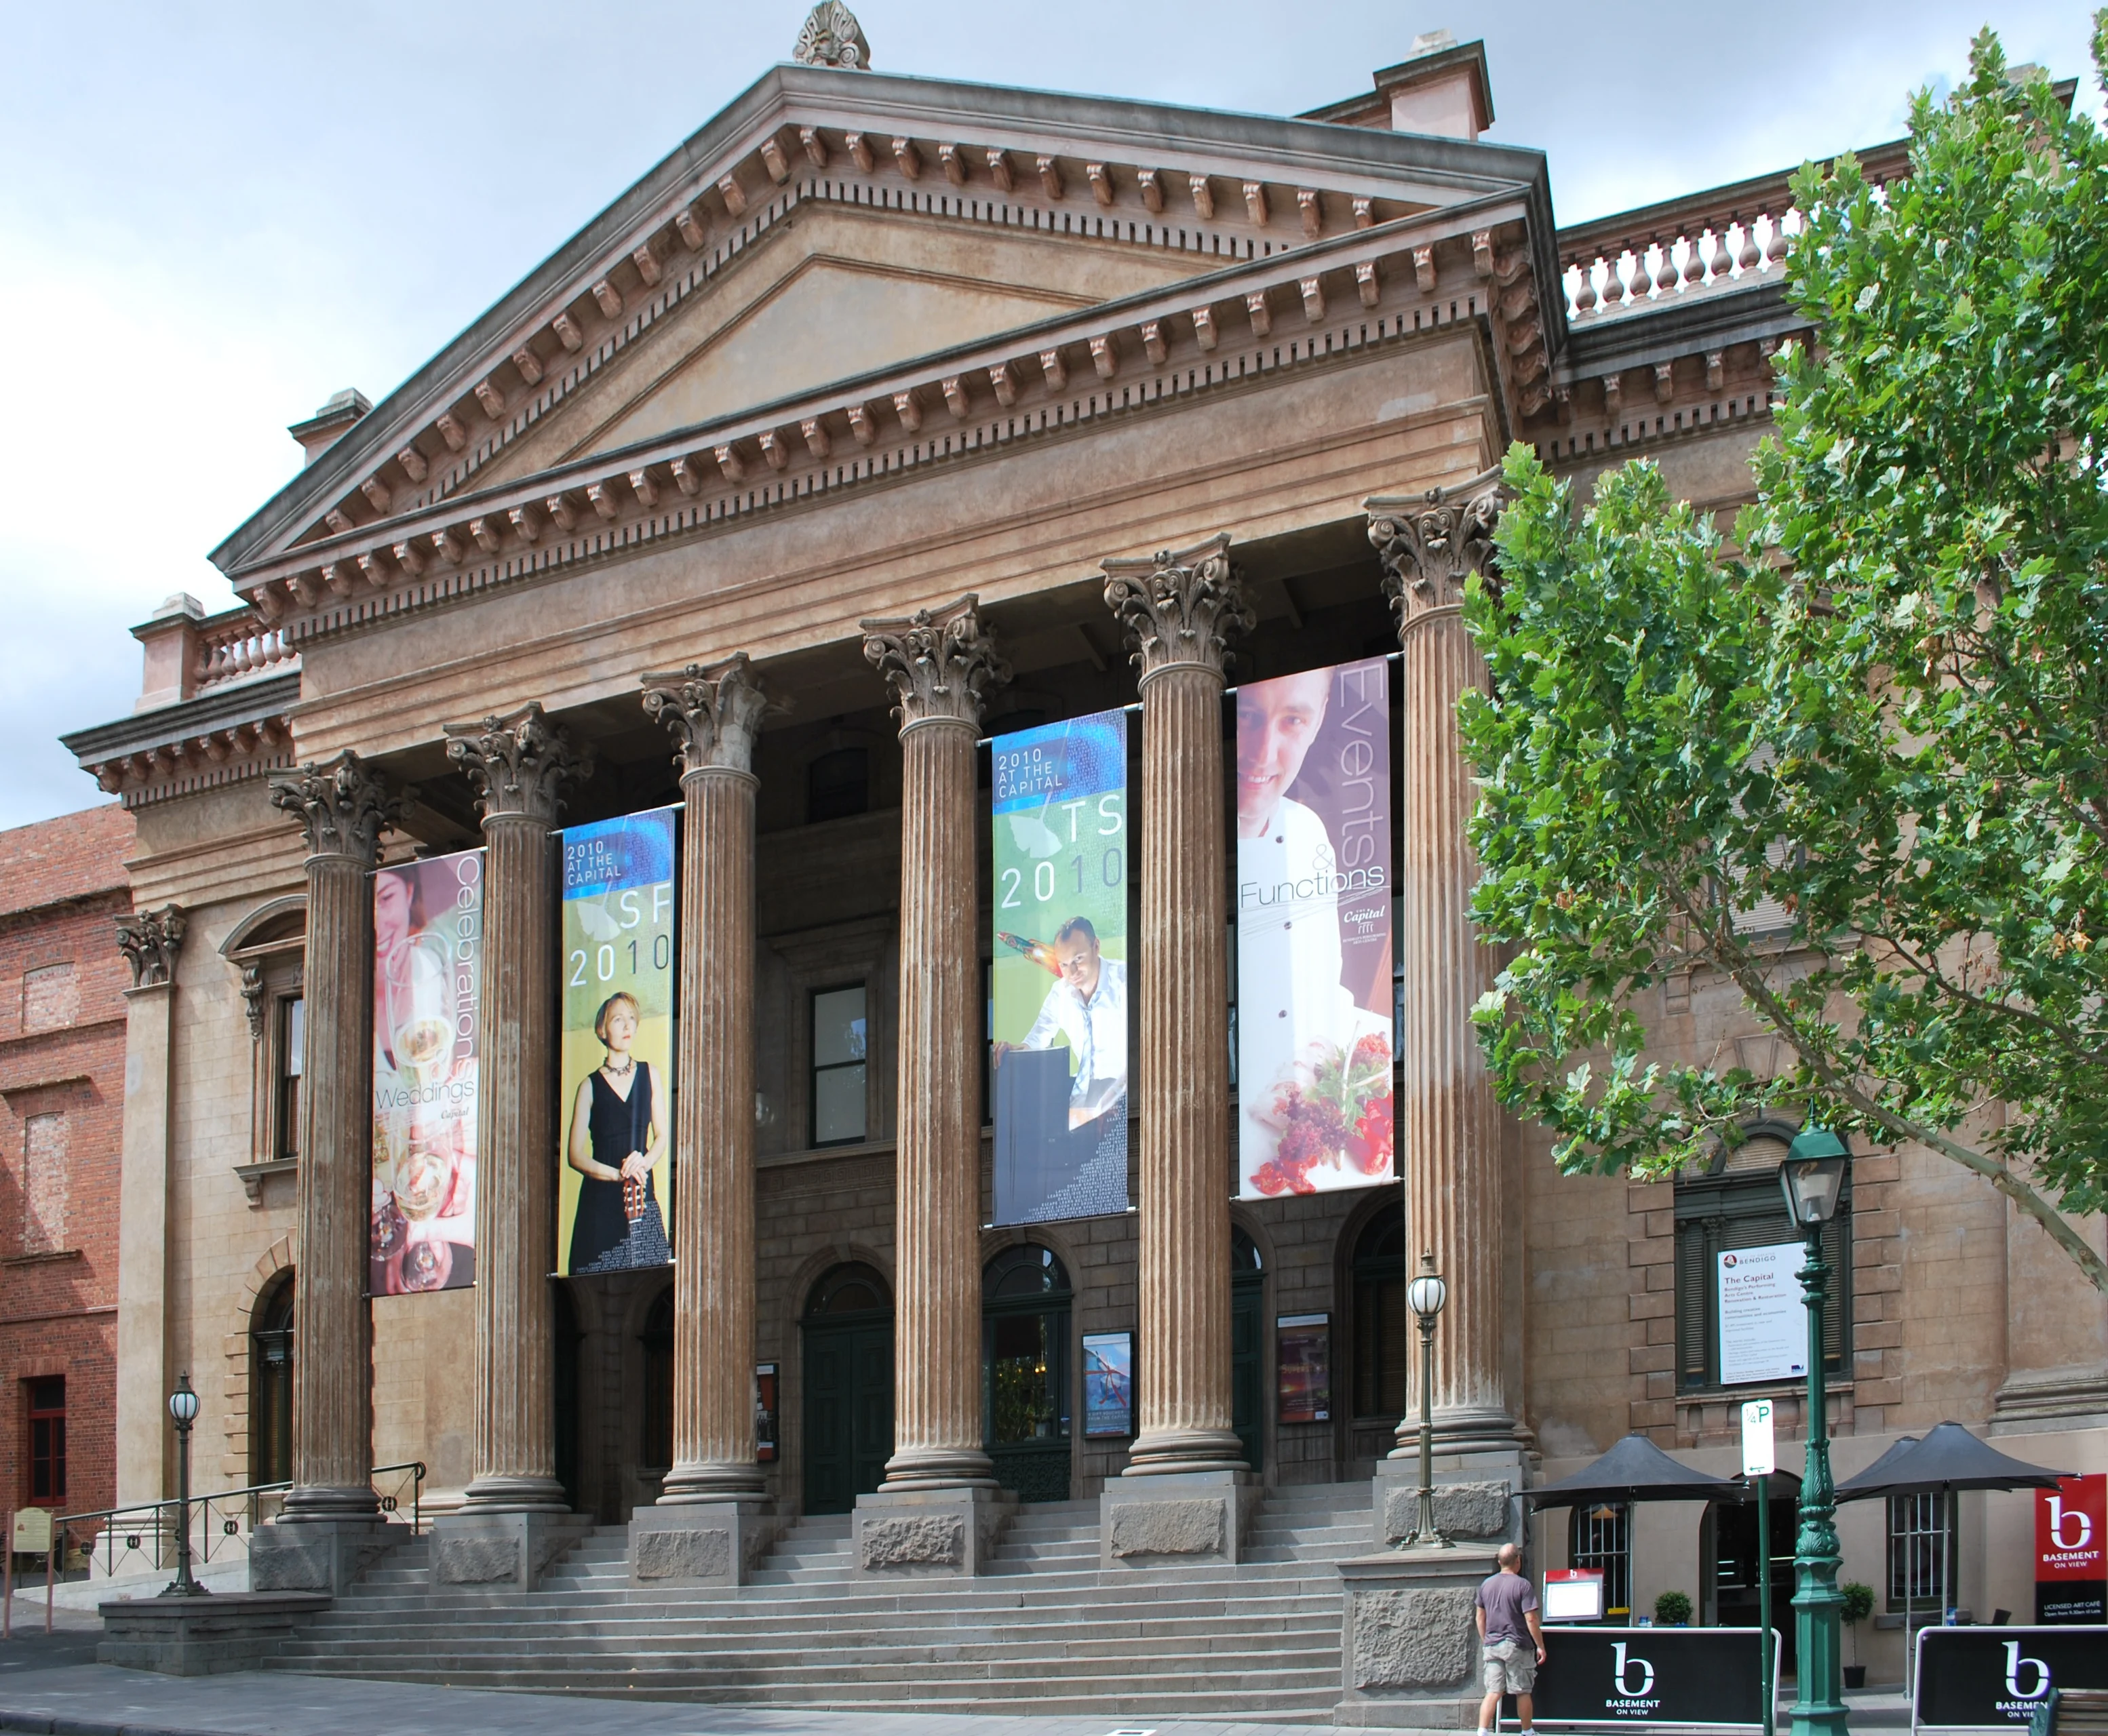 The Capital Theatre in Bendigo, Victoria.